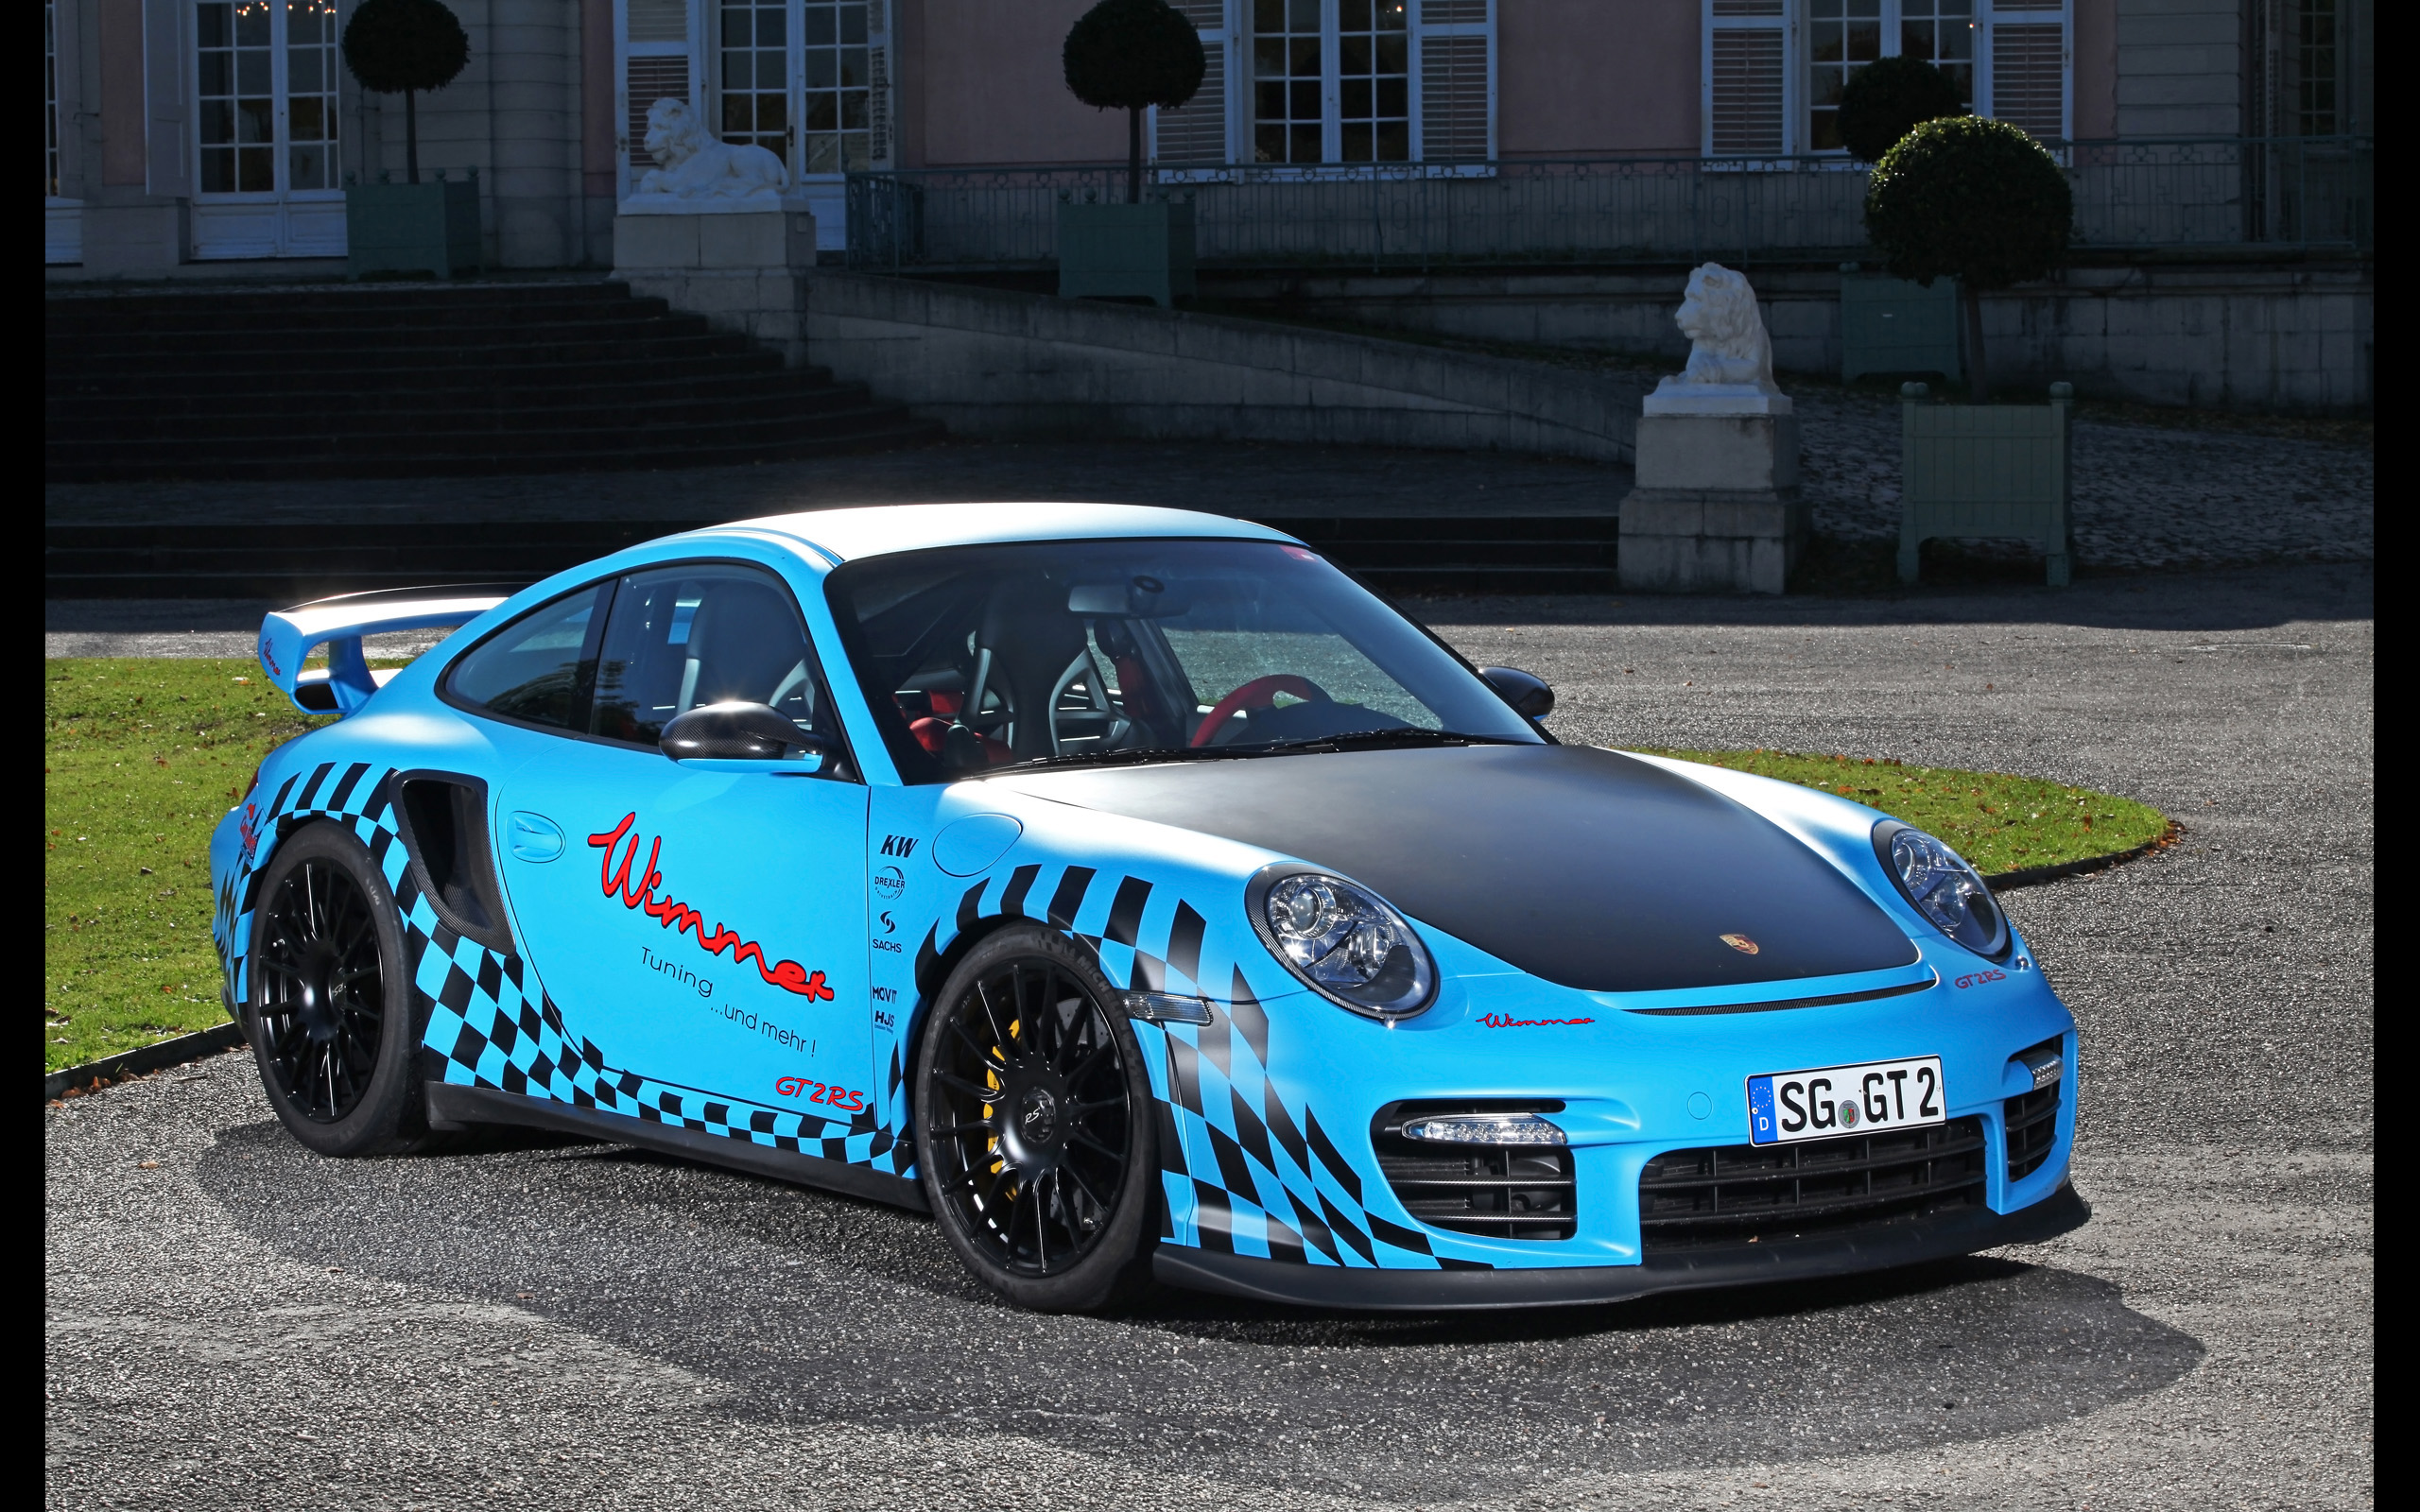 2011, Wimmer, Porsche, 911, Gt2, R s, Tuning Wallpaper